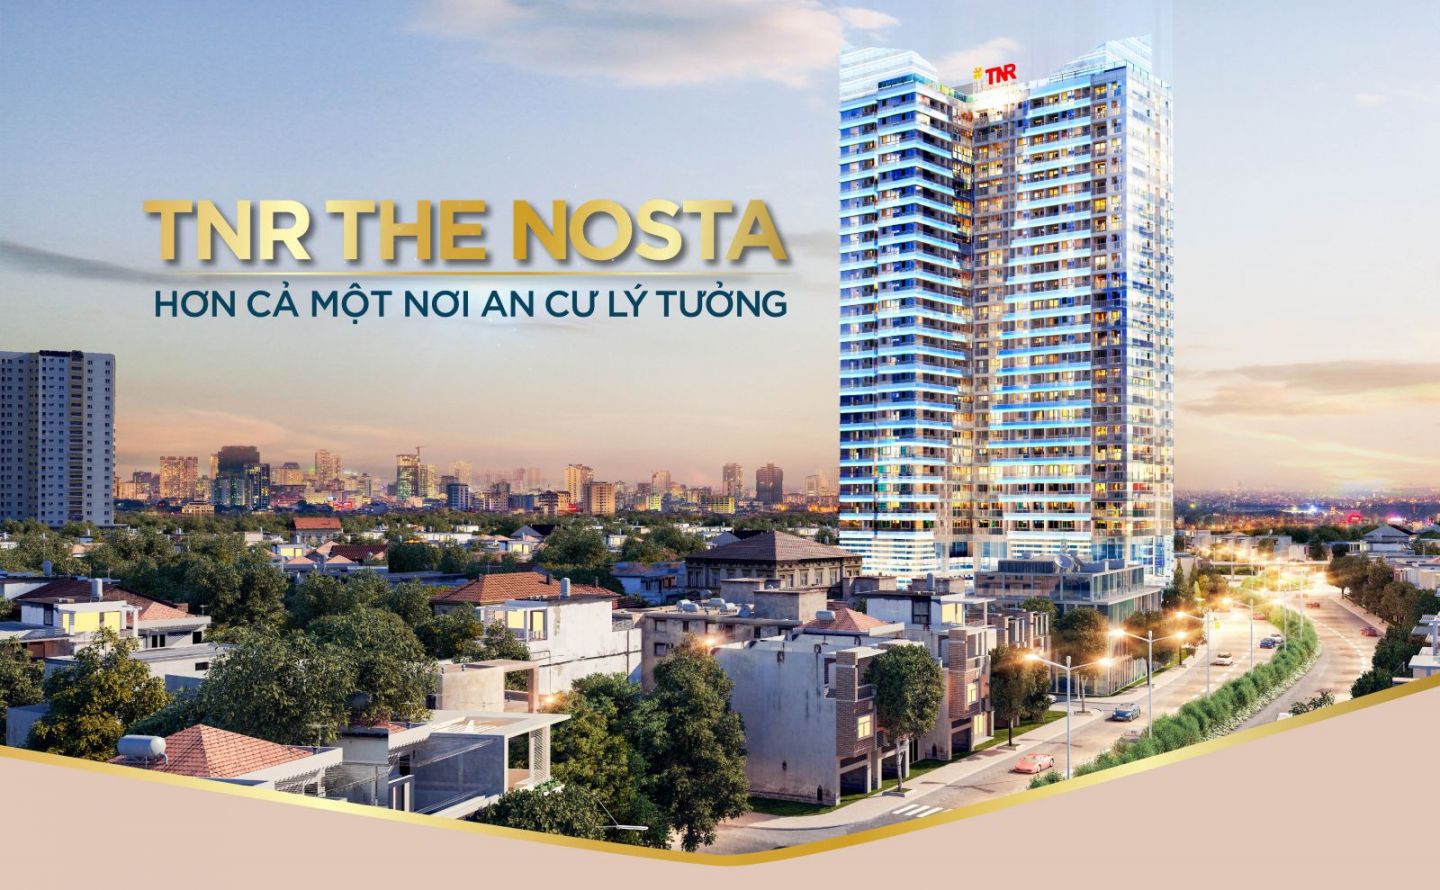 TNR The Nosta - Hơn cả một nơi an cư lý tưởng